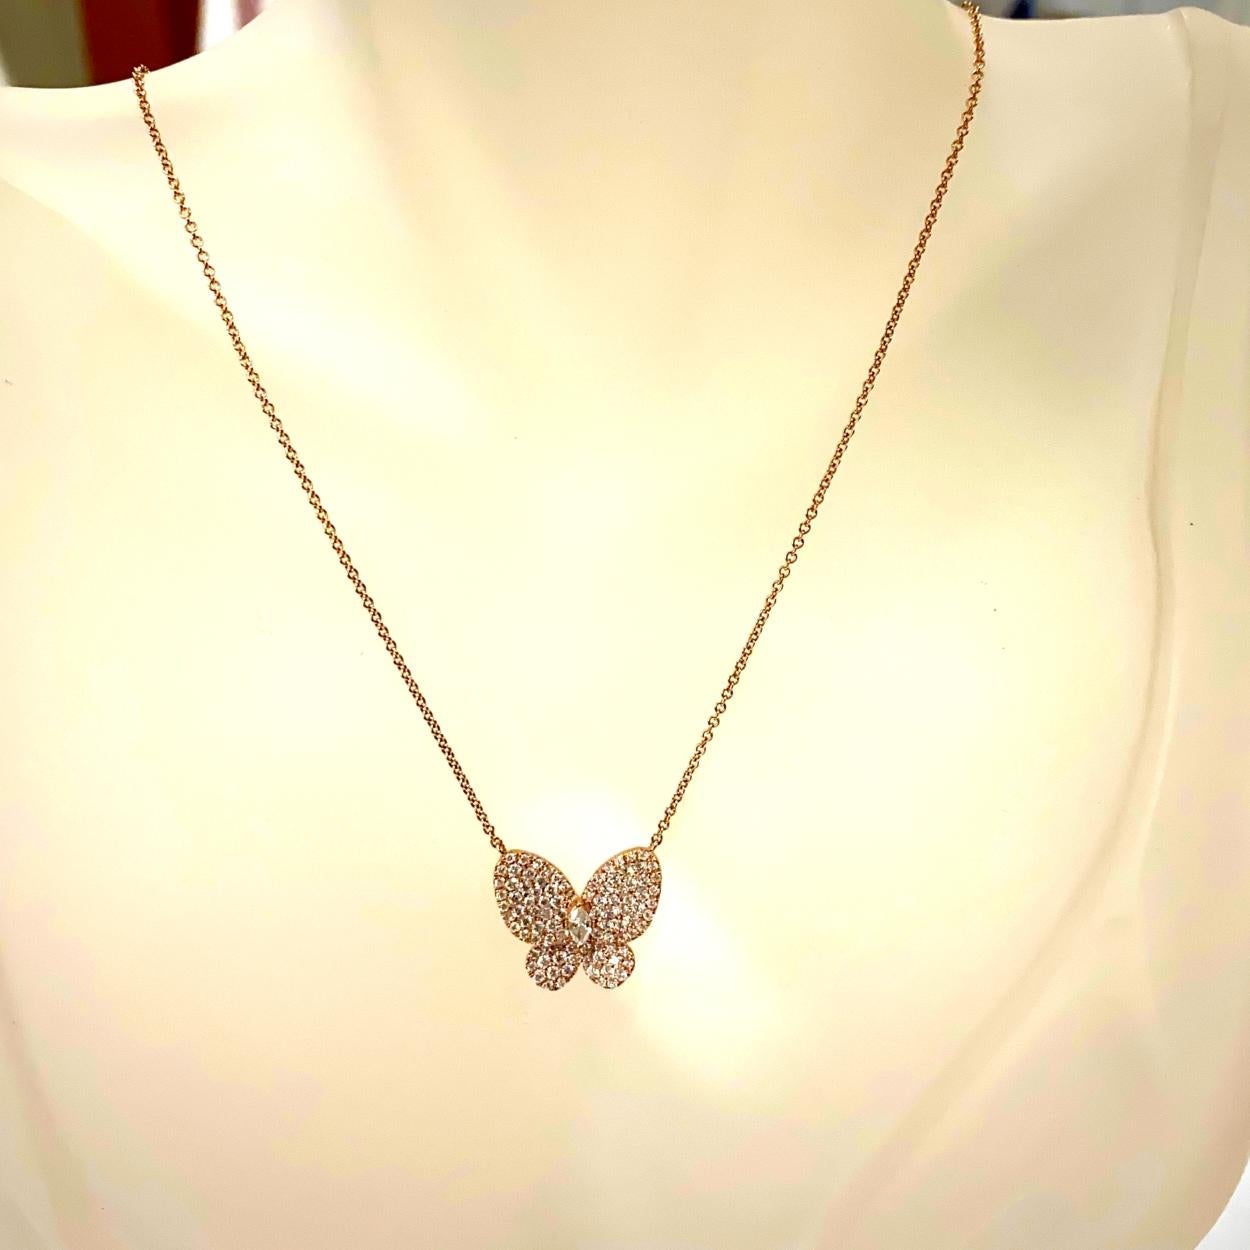 14K Gold Schöne Pave Set Schmetterling Halskette mit einem Marquise Diamant verdoppelt als der Körper mit einem Gesamtgewicht von 0,90 ct.
Größe 20mm x 18mm
Kettenlänge: 15 Zoll
Gesamtgewicht der Diamanten: 0,90 Karat